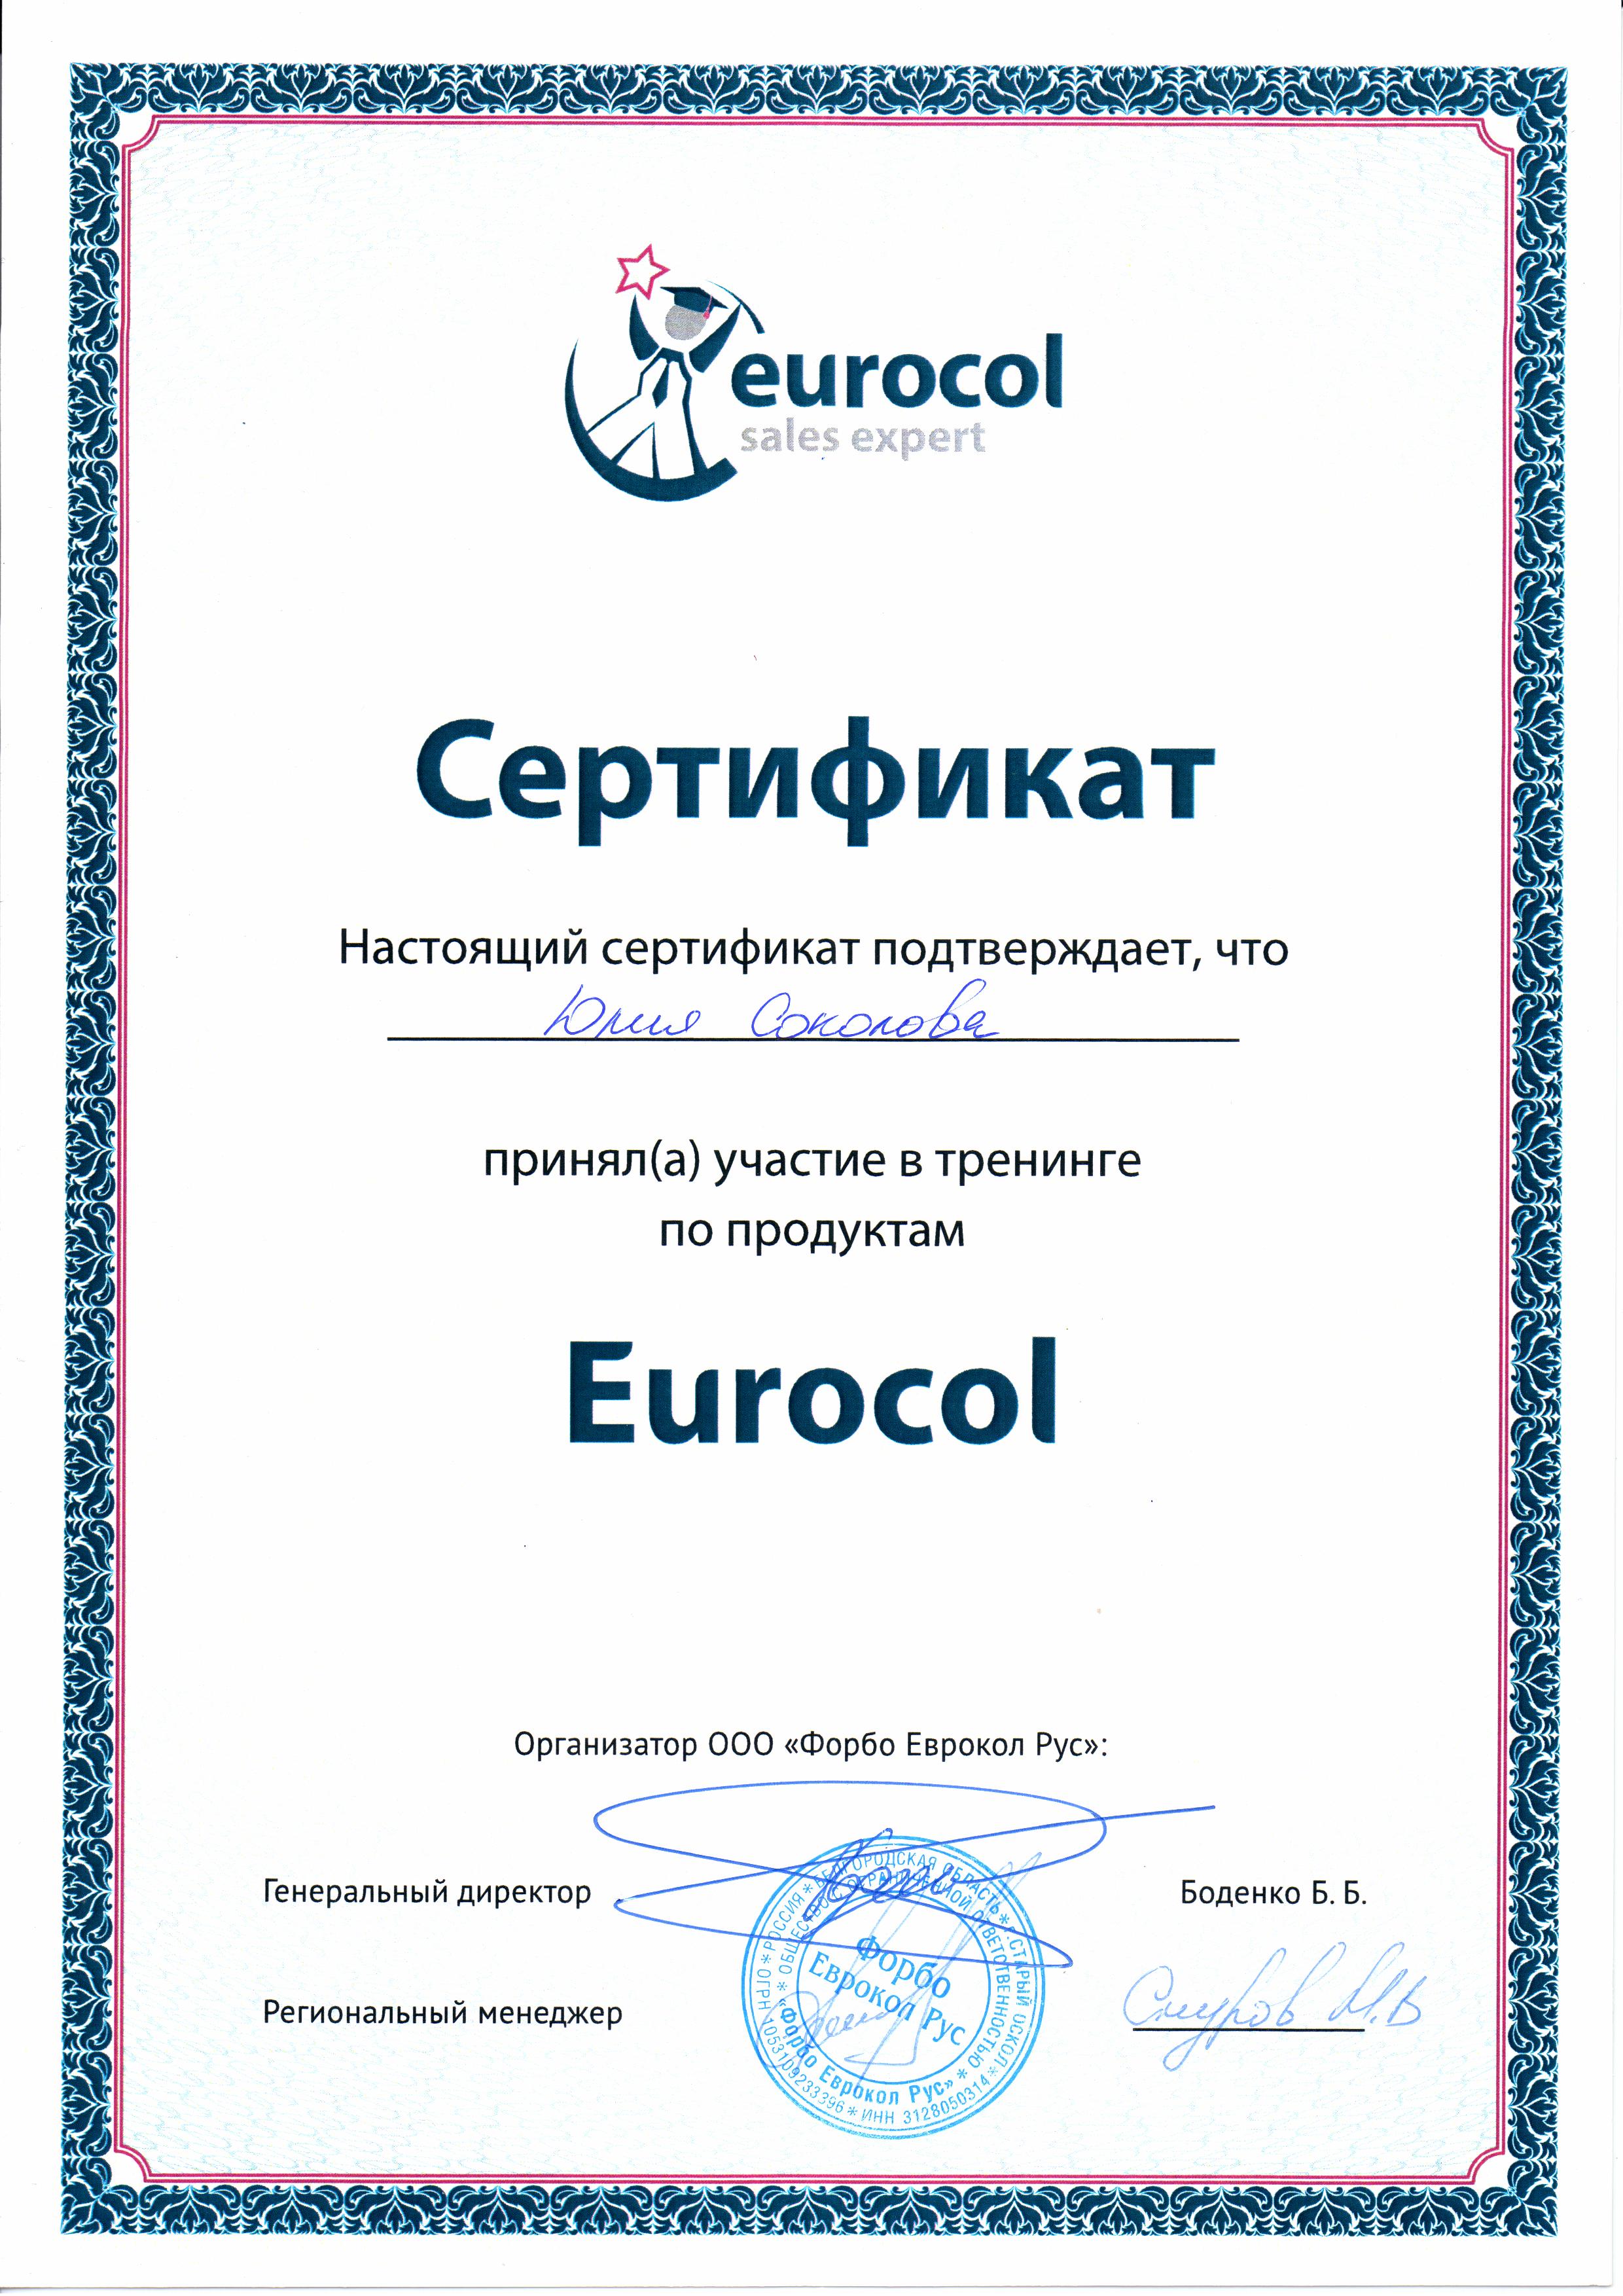 Сертификат Юлии Соколовой Eurocol